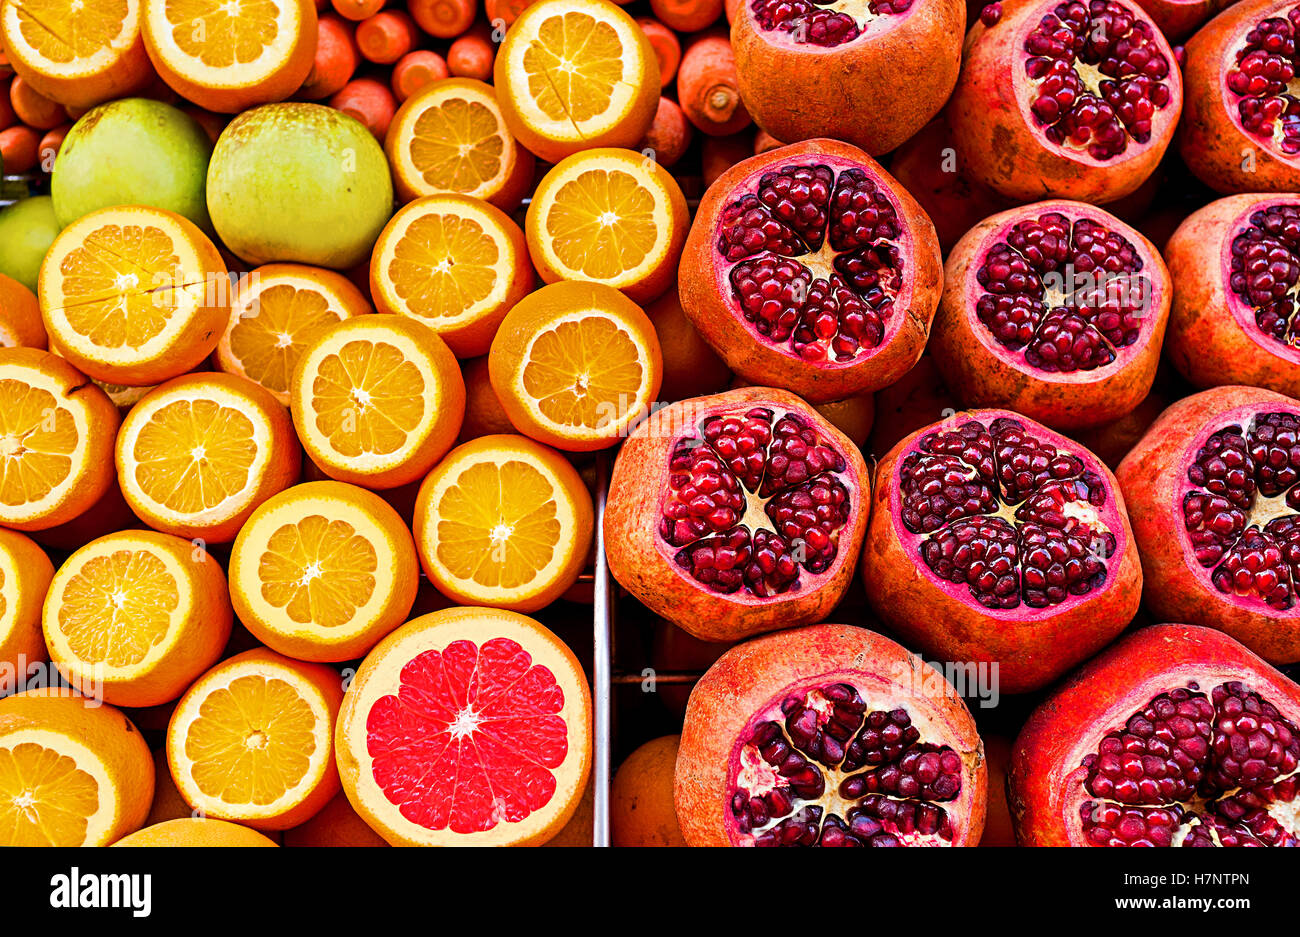 La succosa frutta attira i turisti a comprare fresche ad Istanbul in Turchia. Foto Stock